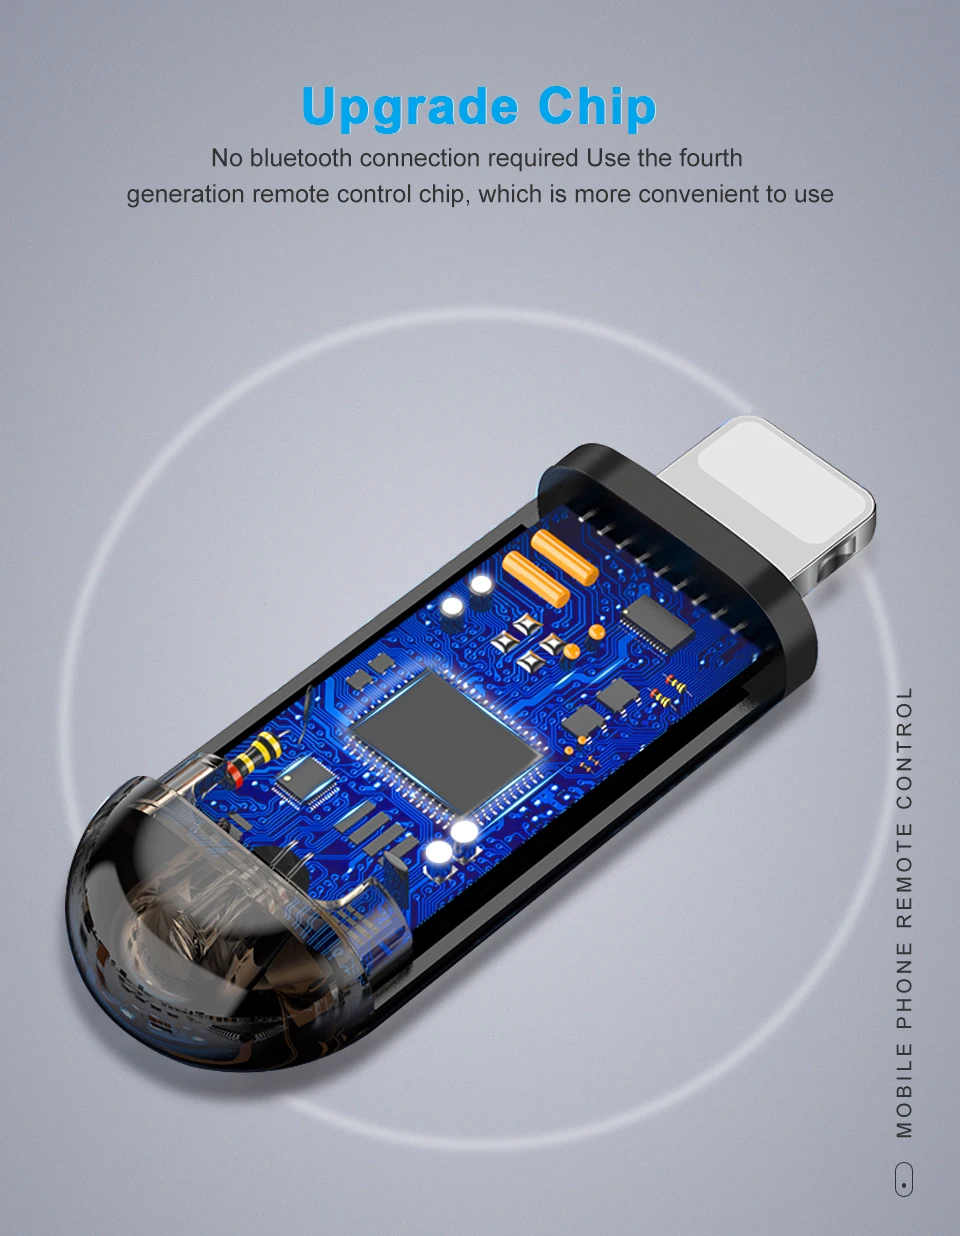 Coolreall iPhone интерфейс смарт-приложение управление мобильный телефон rпульт дистанционного управления беспроводной инфракрасный прибор адаптер ИК USB адаптер